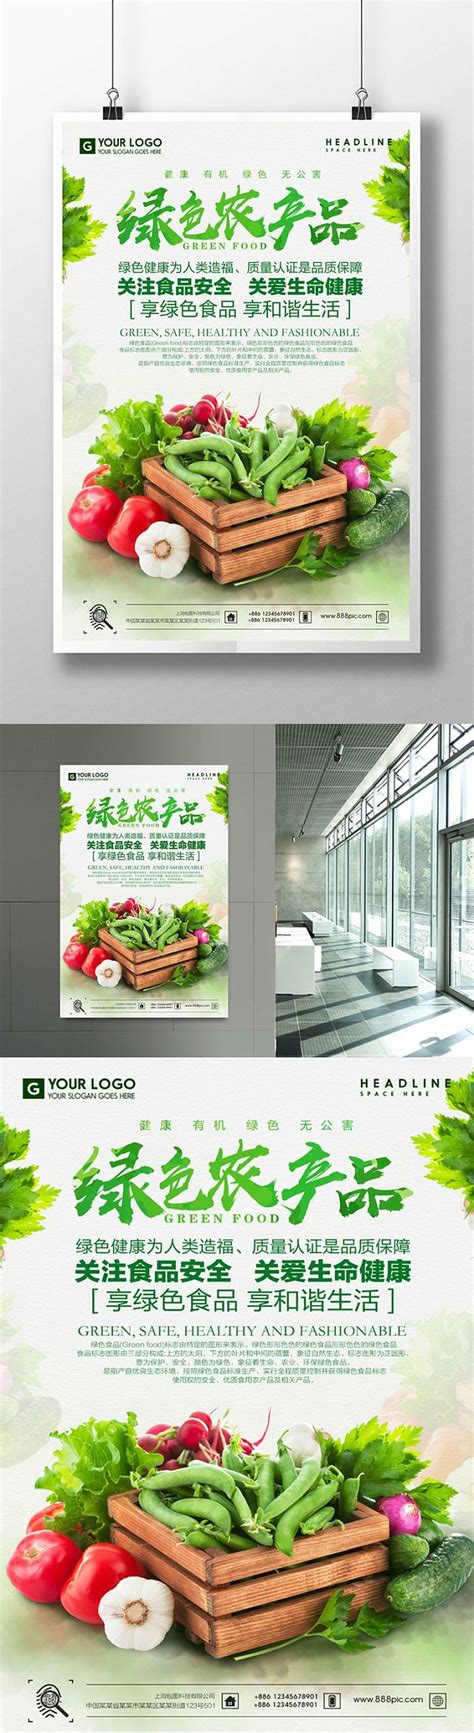 有机蔬菜天然农产品绿色食品创意宣传海报设计图片下载_psd格式素材_熊猫办公